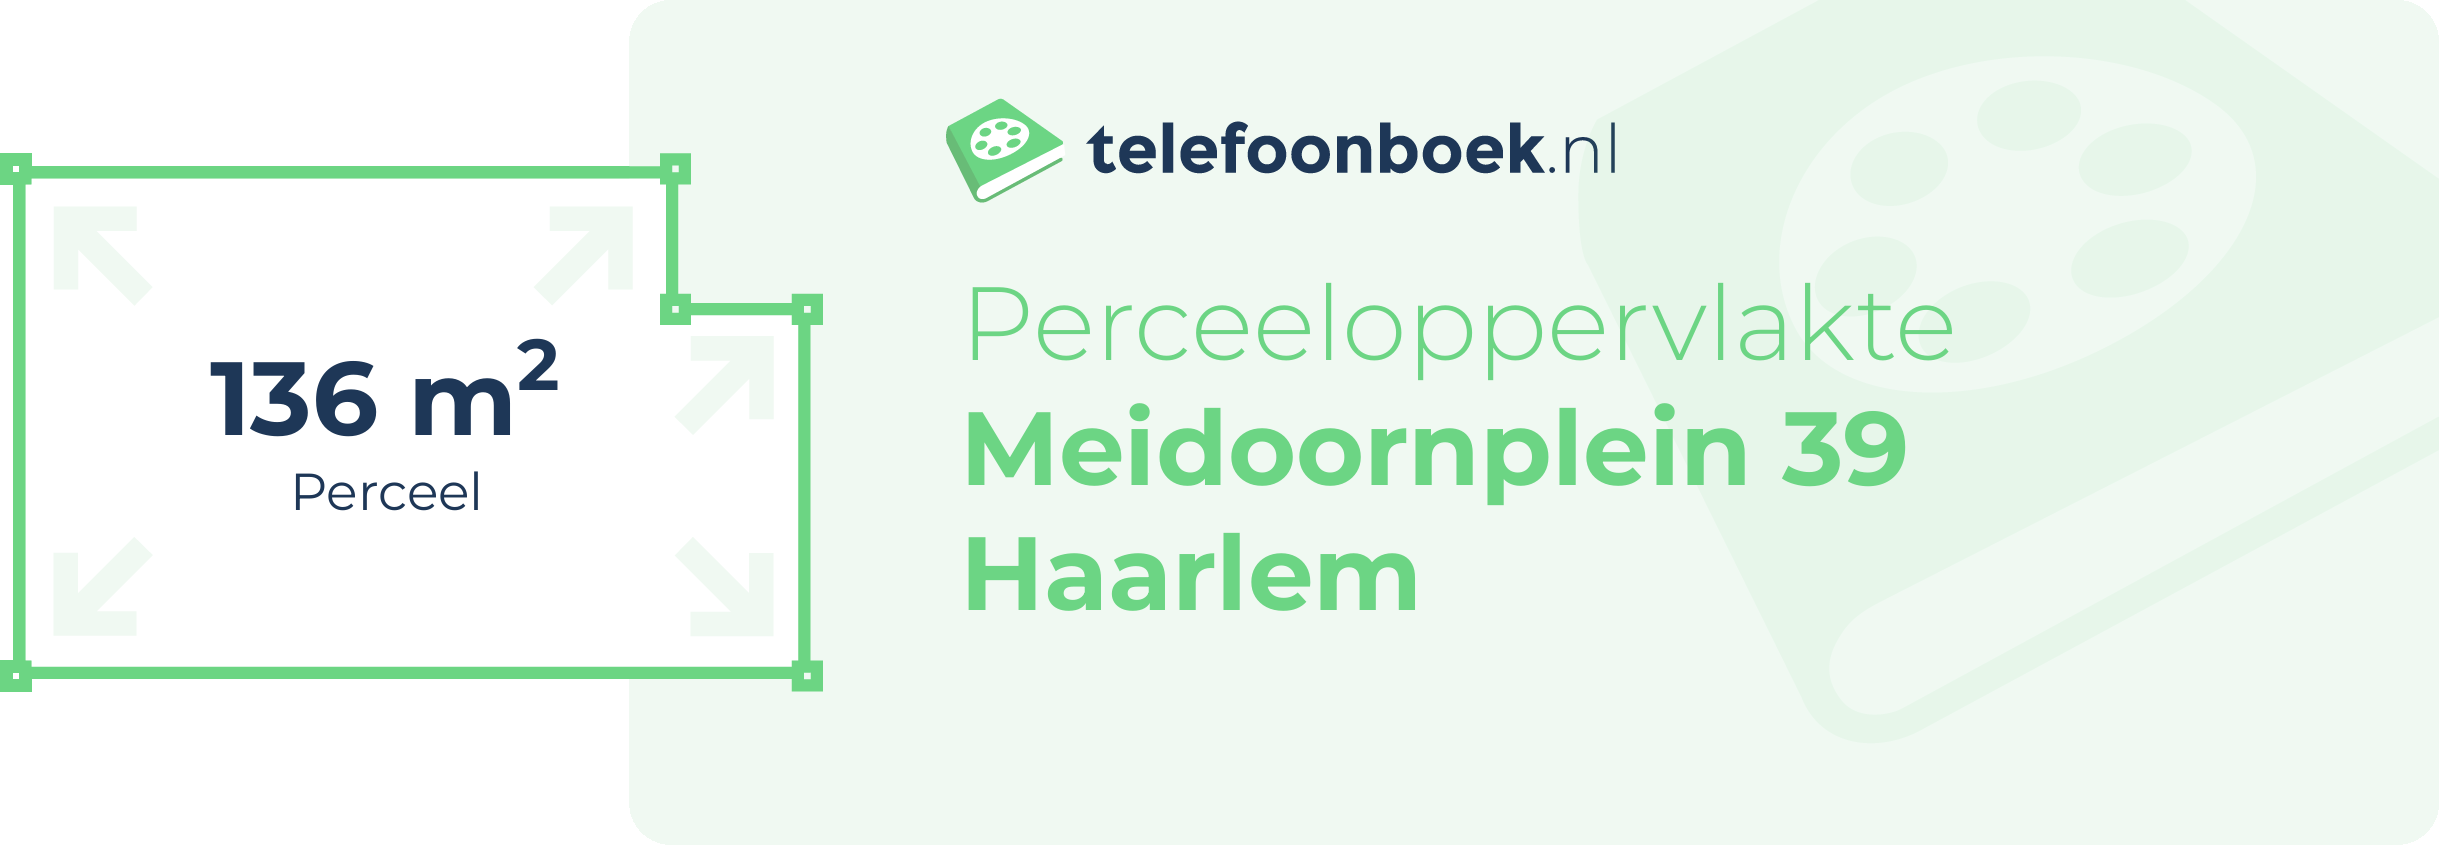 Perceeloppervlakte Meidoornplein 39 Haarlem